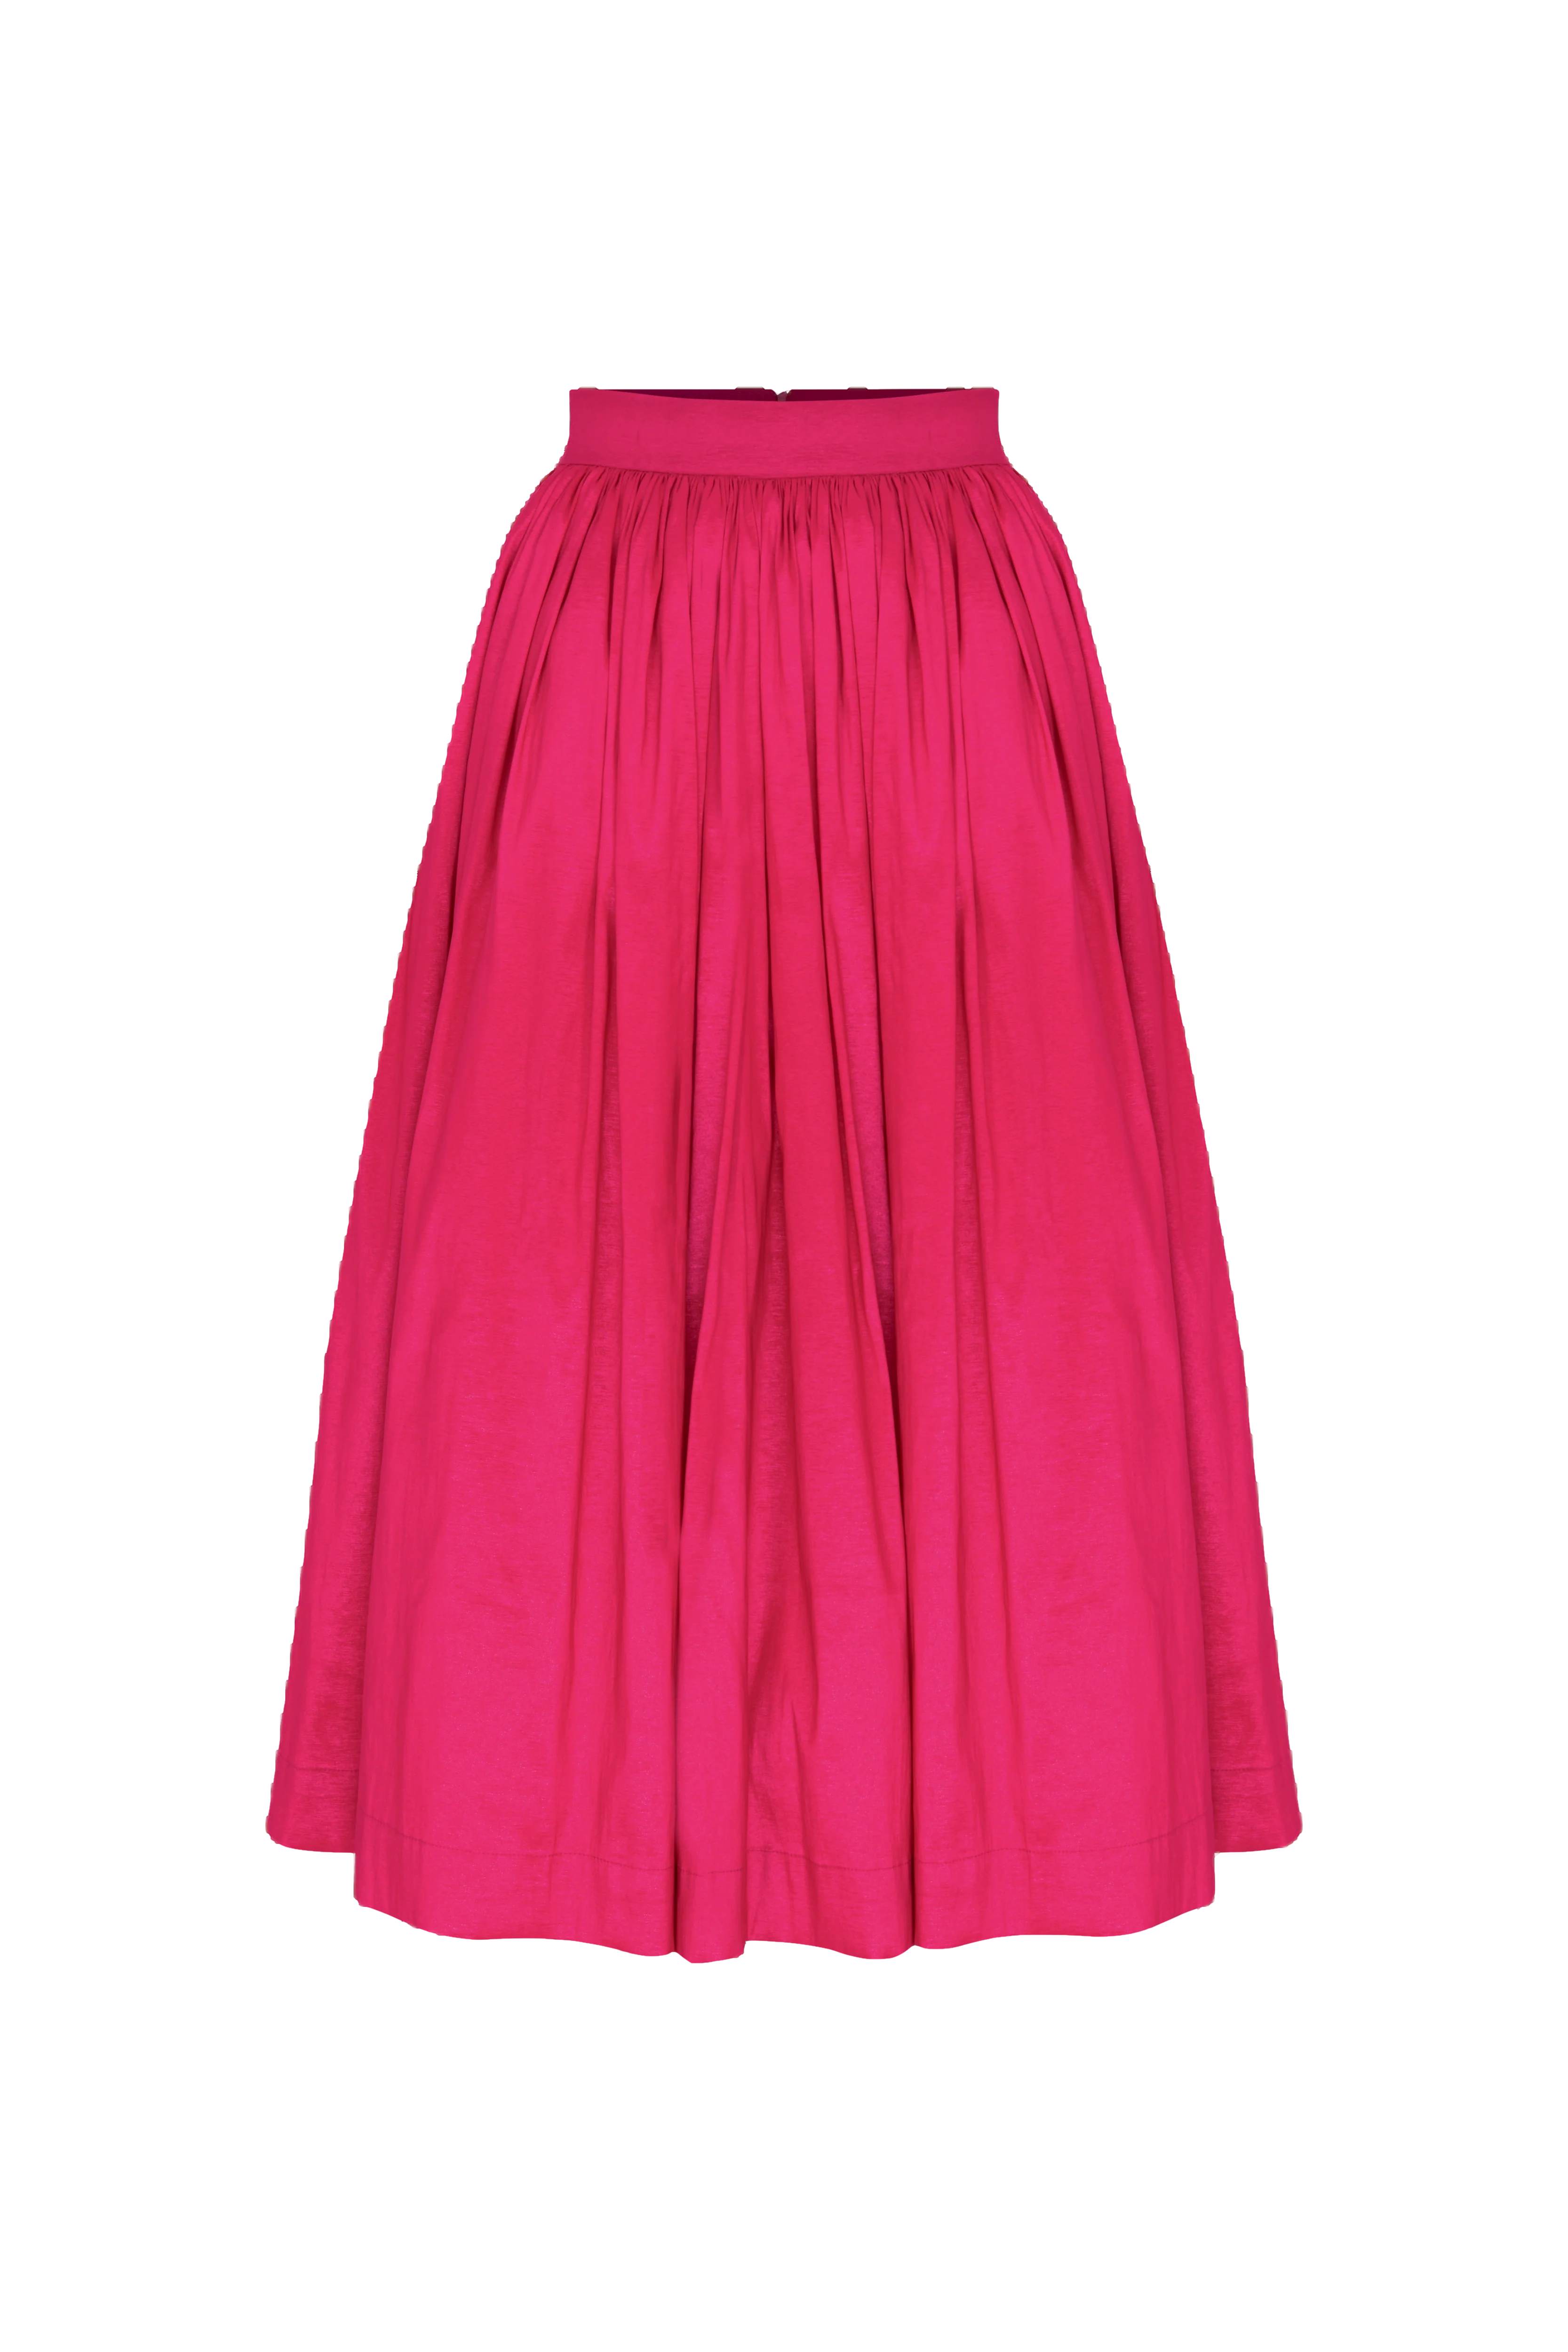 Nazli Ceren Lou Lou Midi Skirt In Pink